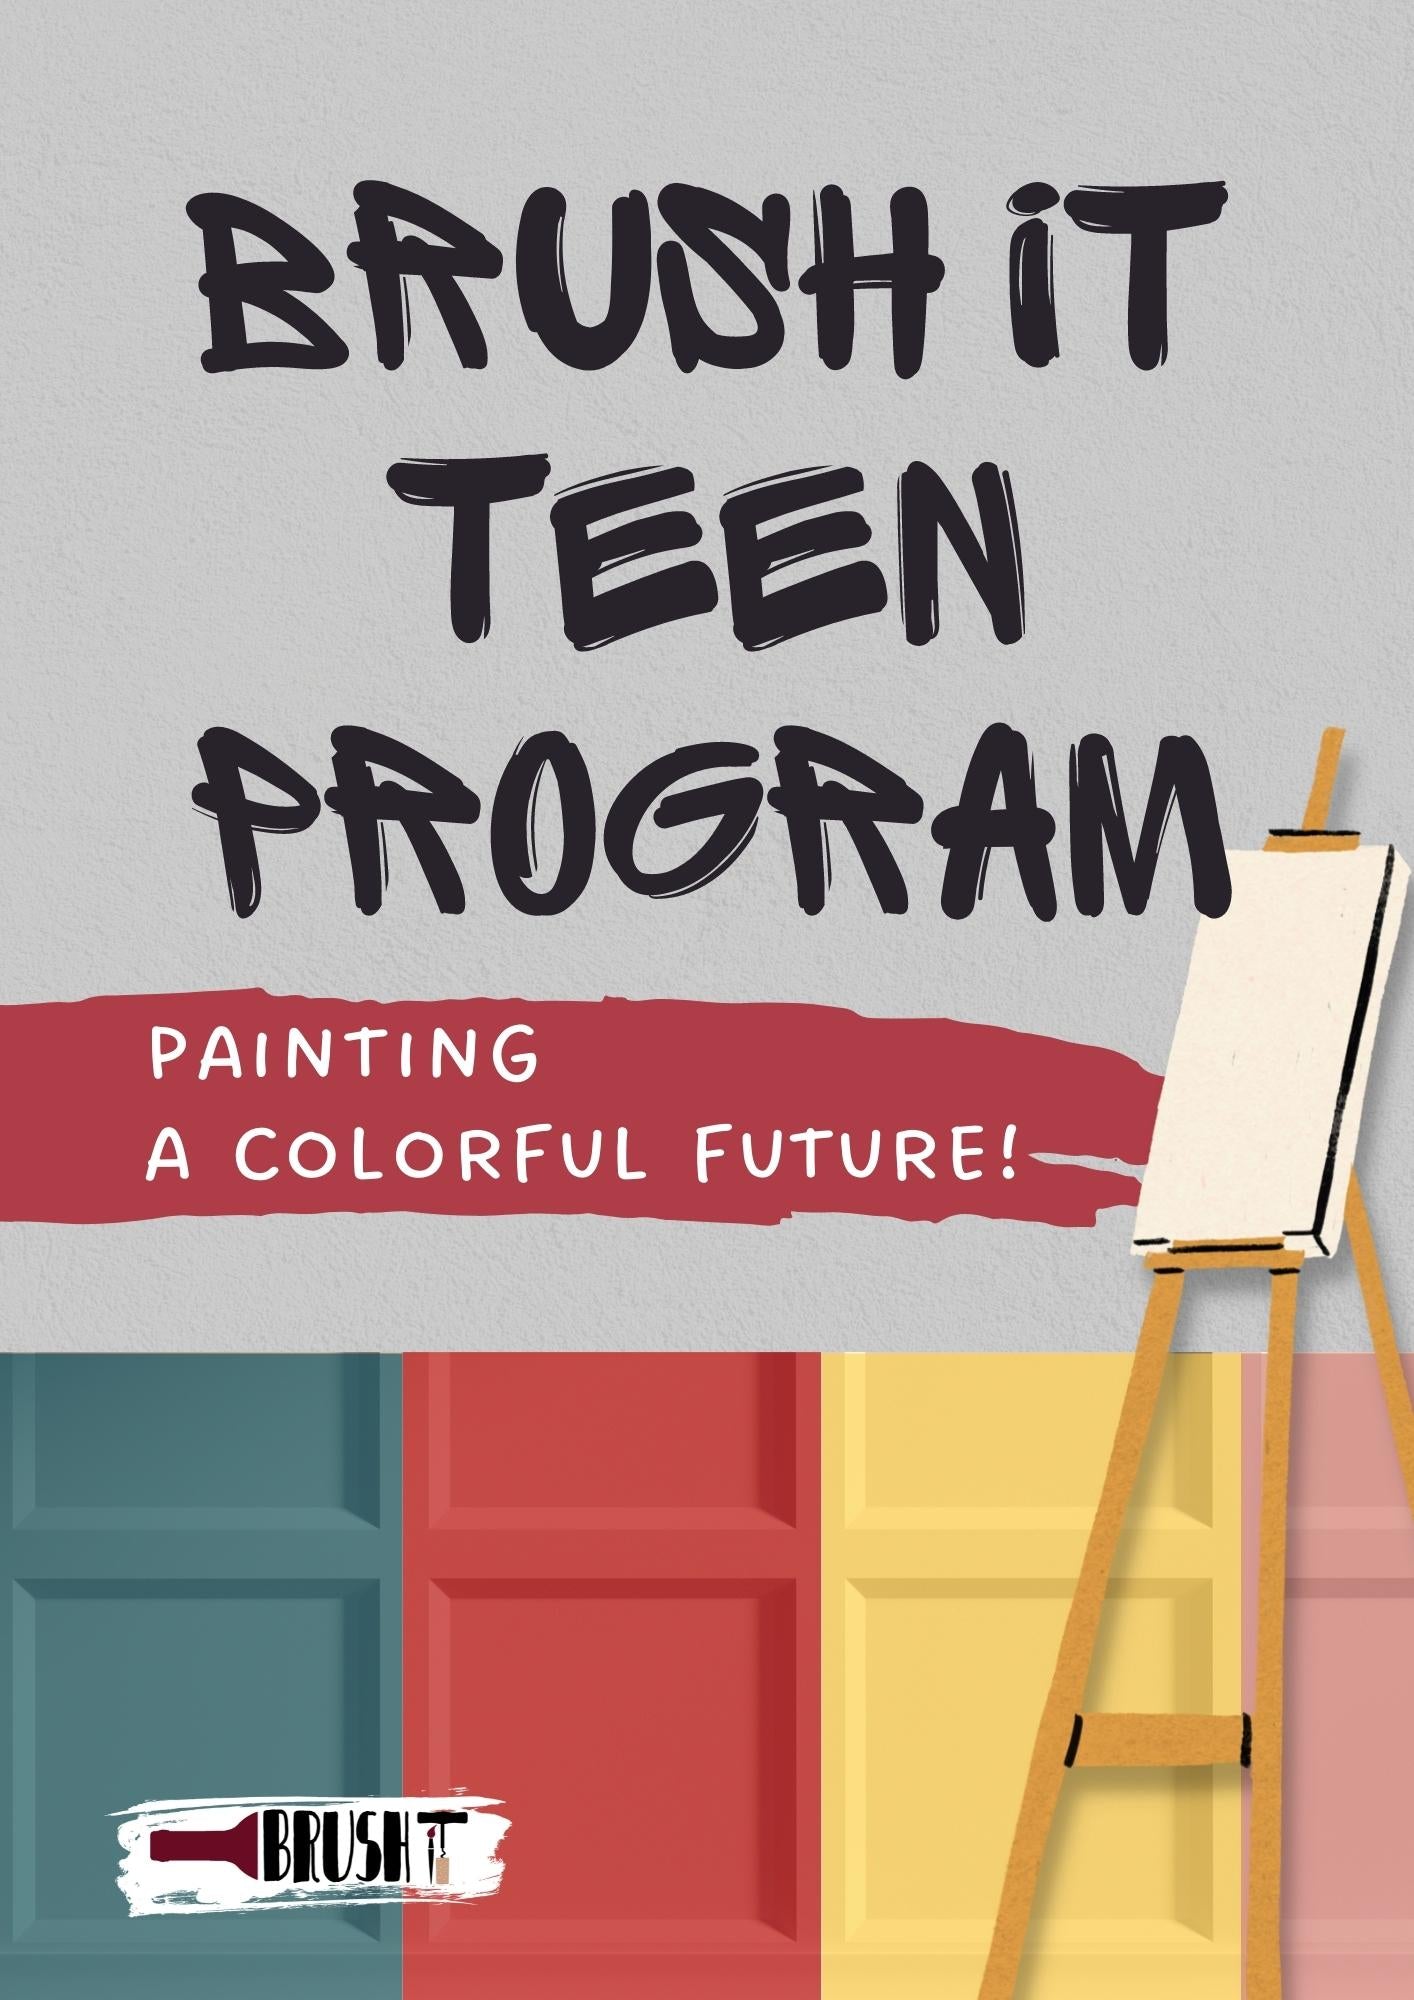 Brush It Teen Program